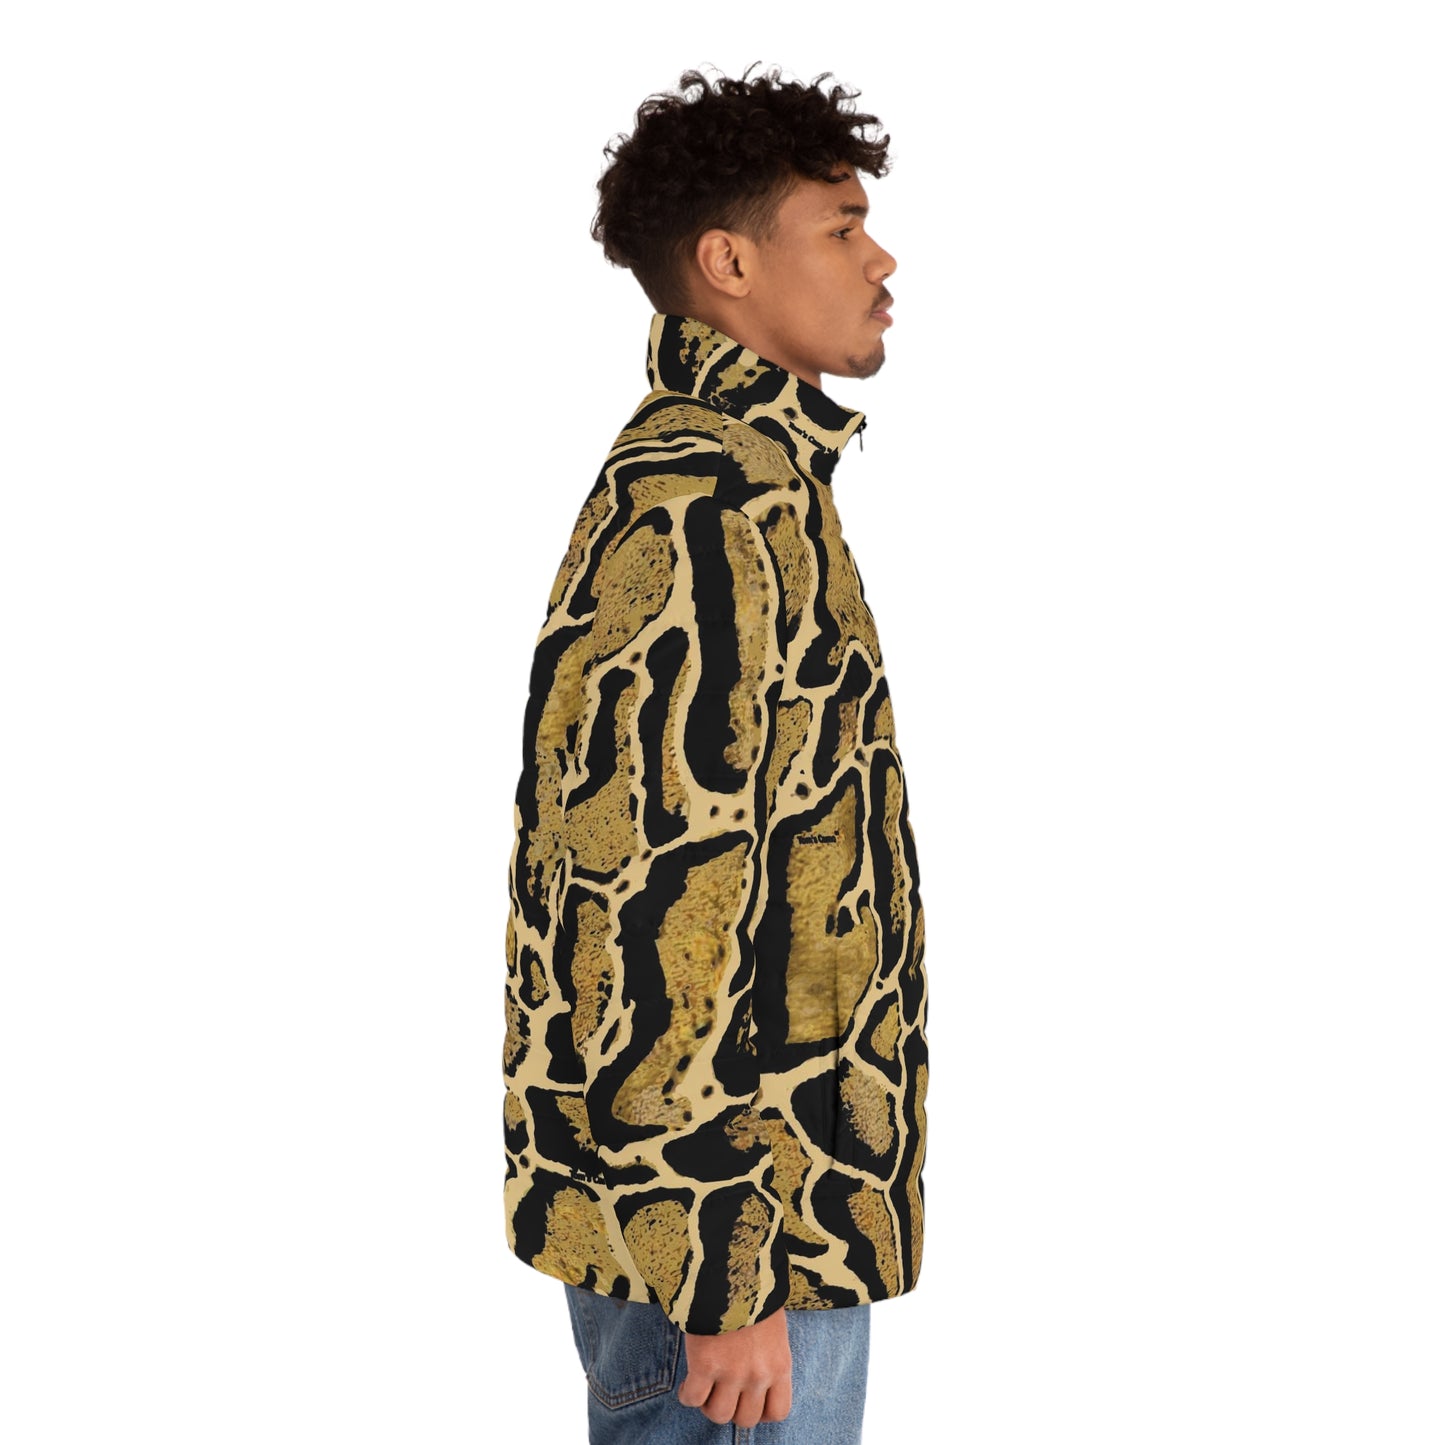 Men's Clouded Leopard Puffer Jacket